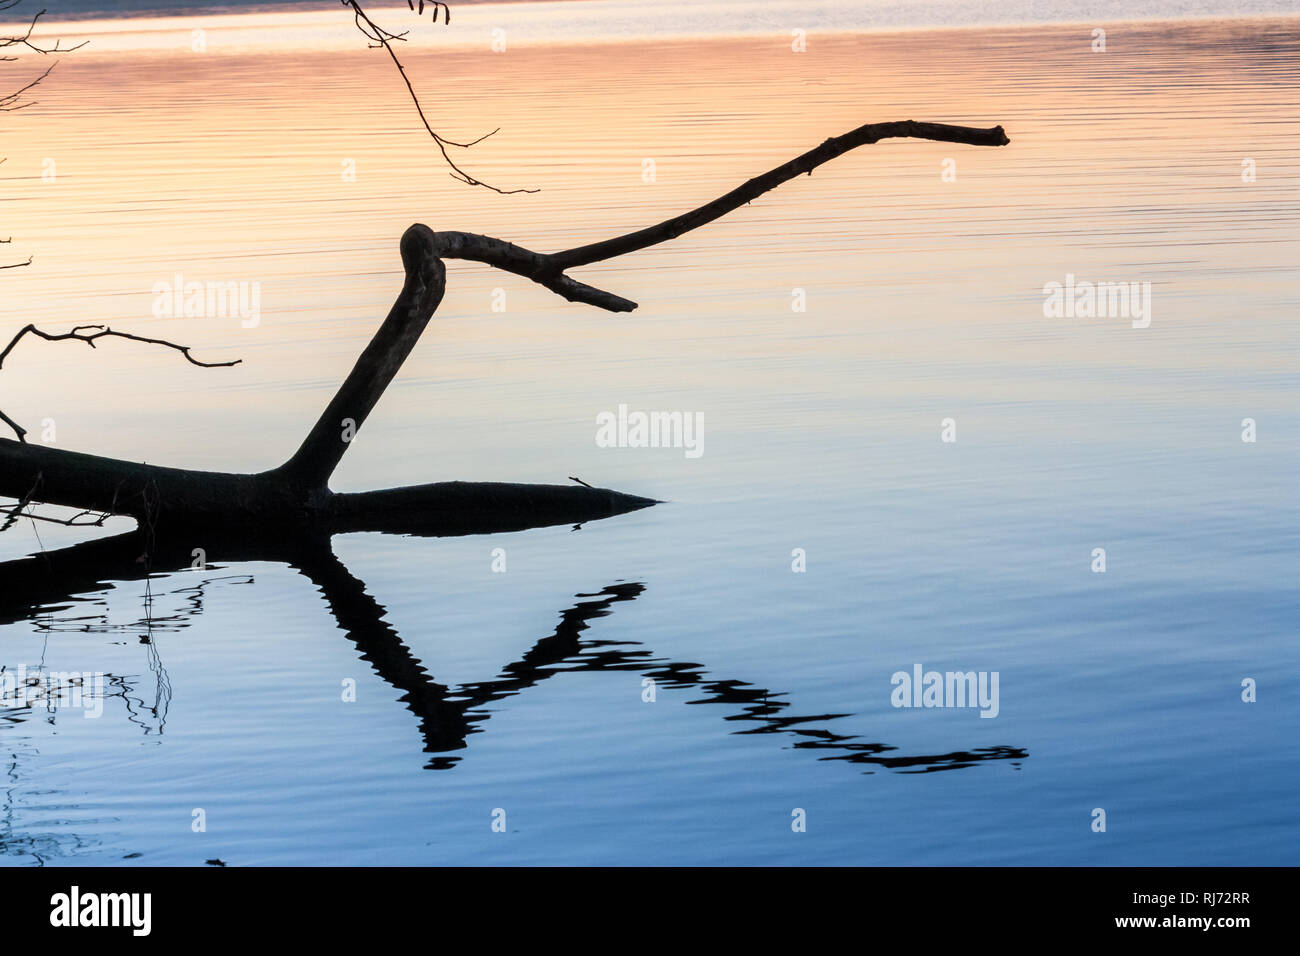 Ein Ast liegt in einem See und spiegelt sich im Wasser, Stock Photo